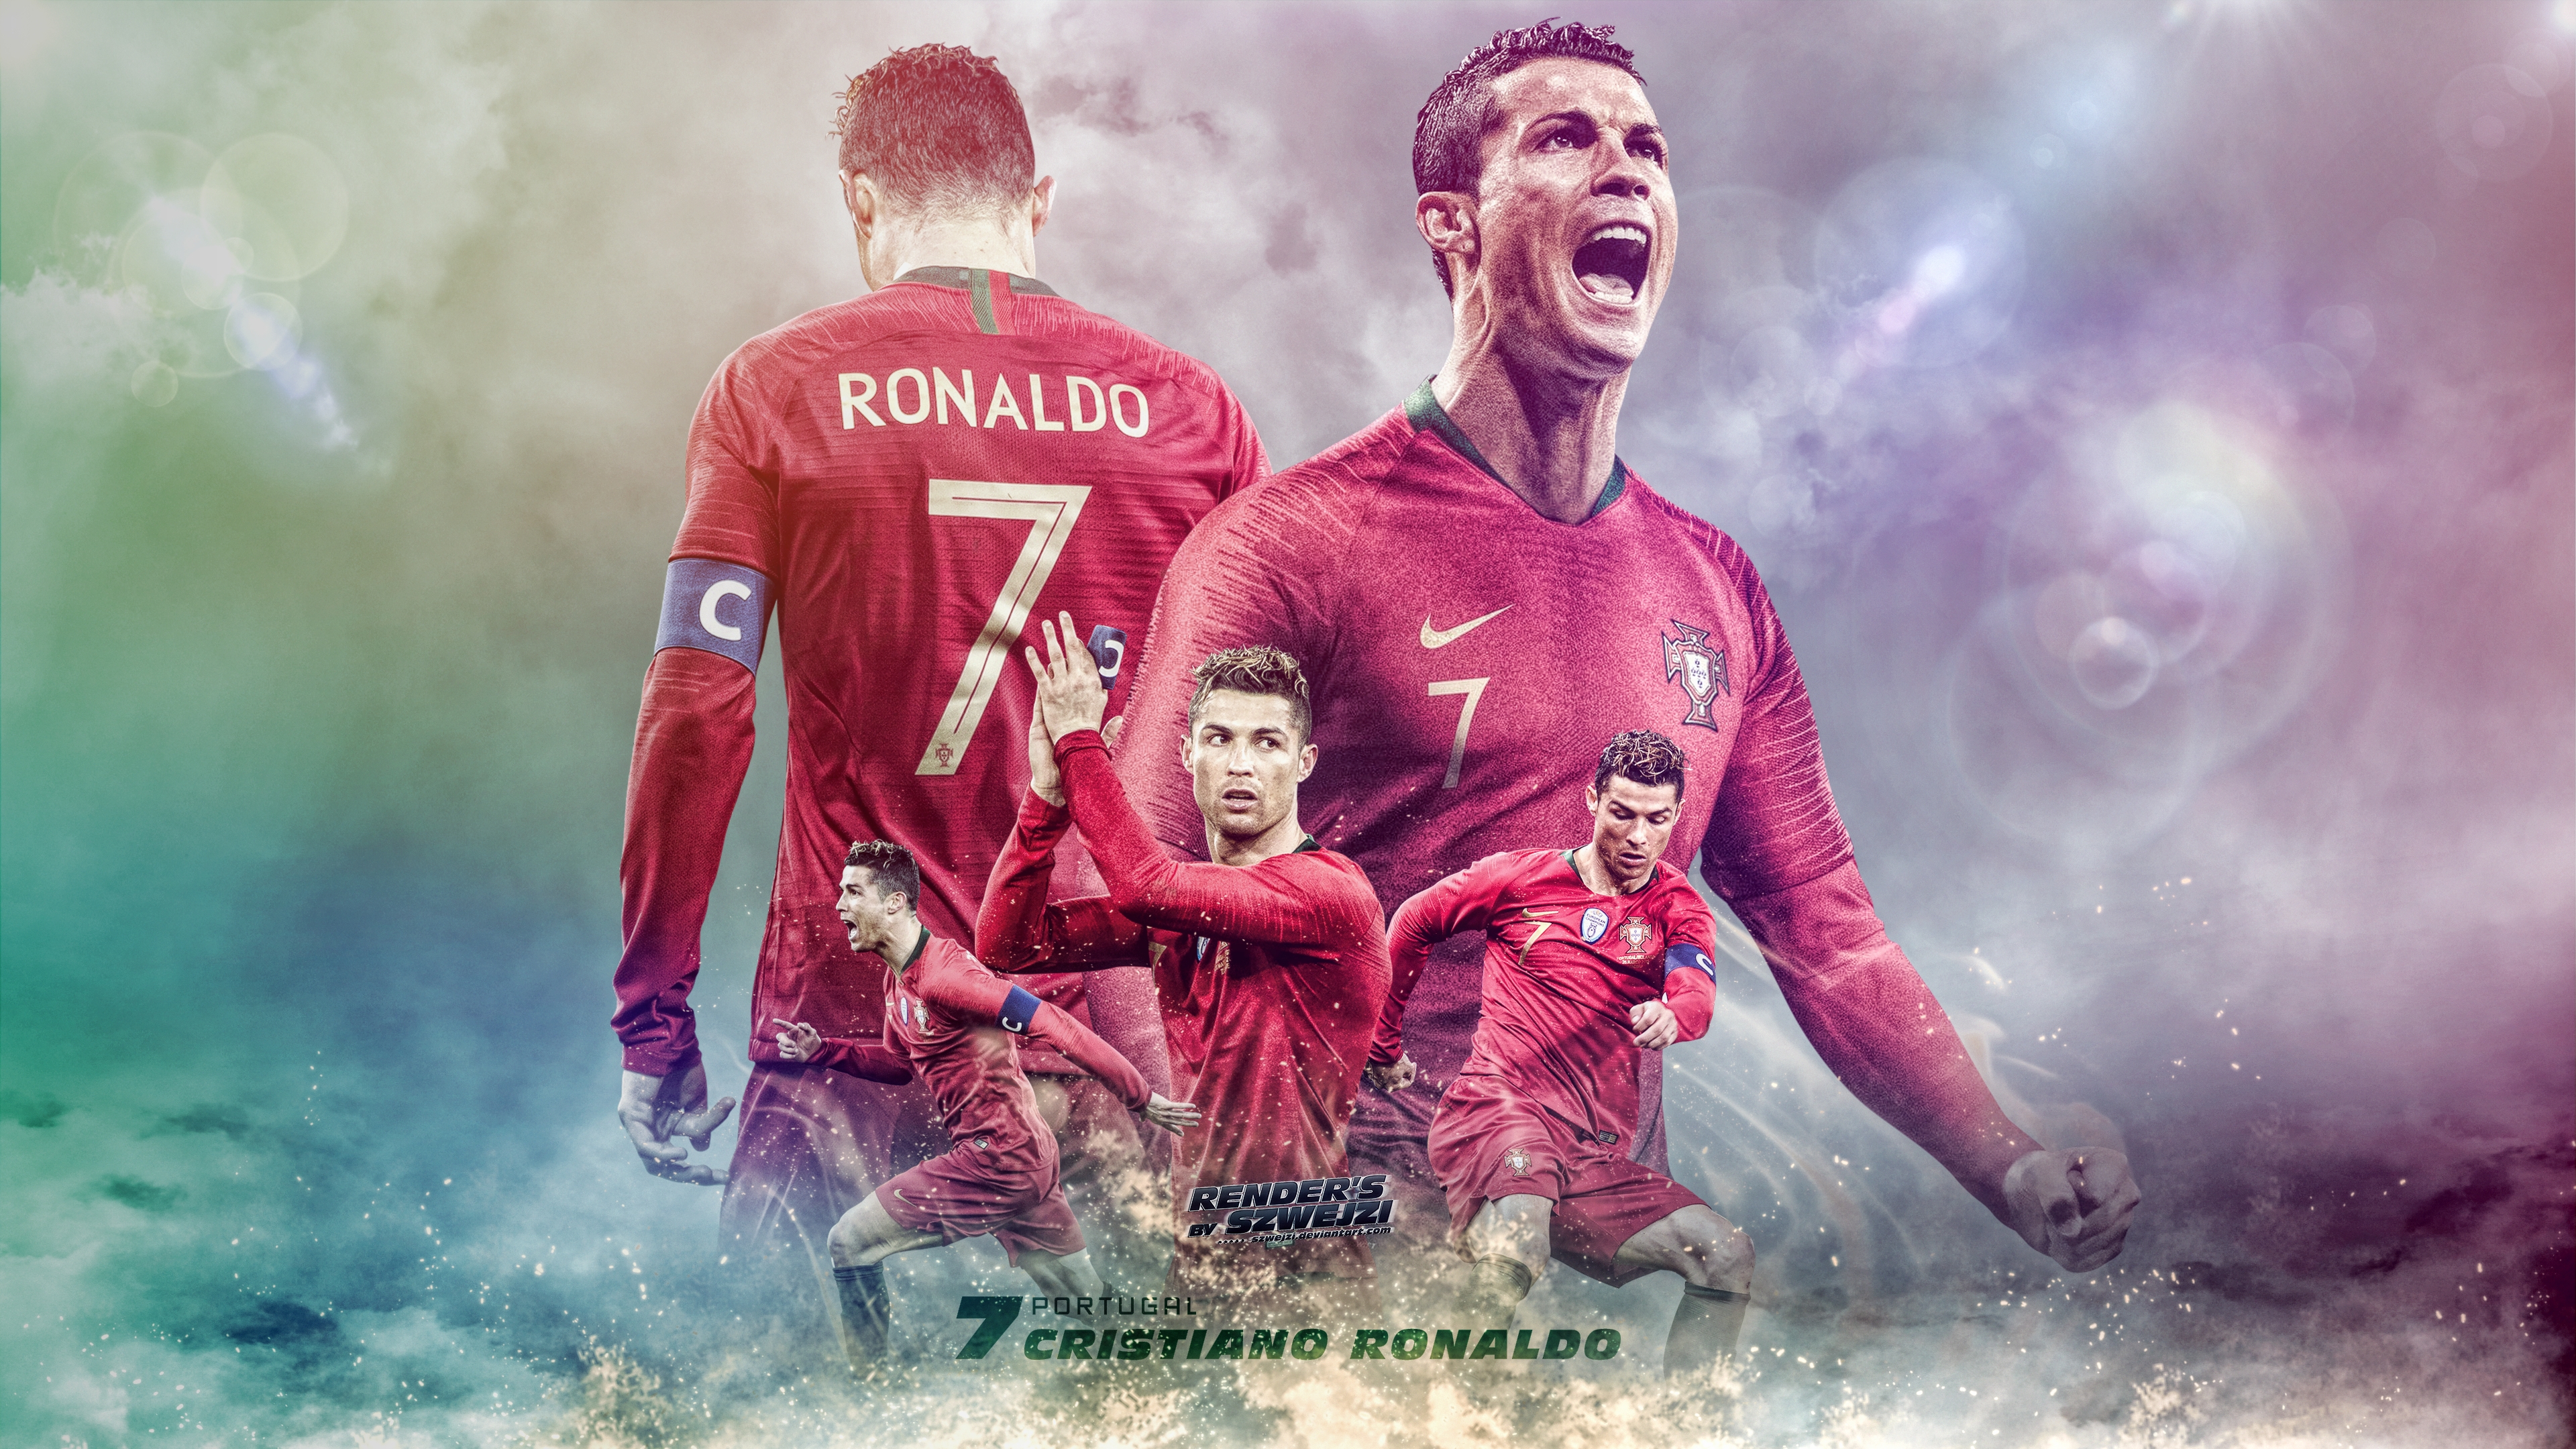 Bóng đá Cristiano Ronaldo: Cùng đón xem những khoảnh khắc đáng chú ý nhất của Cristiano Ronaldo trong sự nghiệp chơi bóng đá đầy ấn tượng. Xem ảnh liên quan để cảm nhận sự tài năng và niềm đam mê cuồng nhiệt của ngôi sao này với môn thể thao yêu thích.